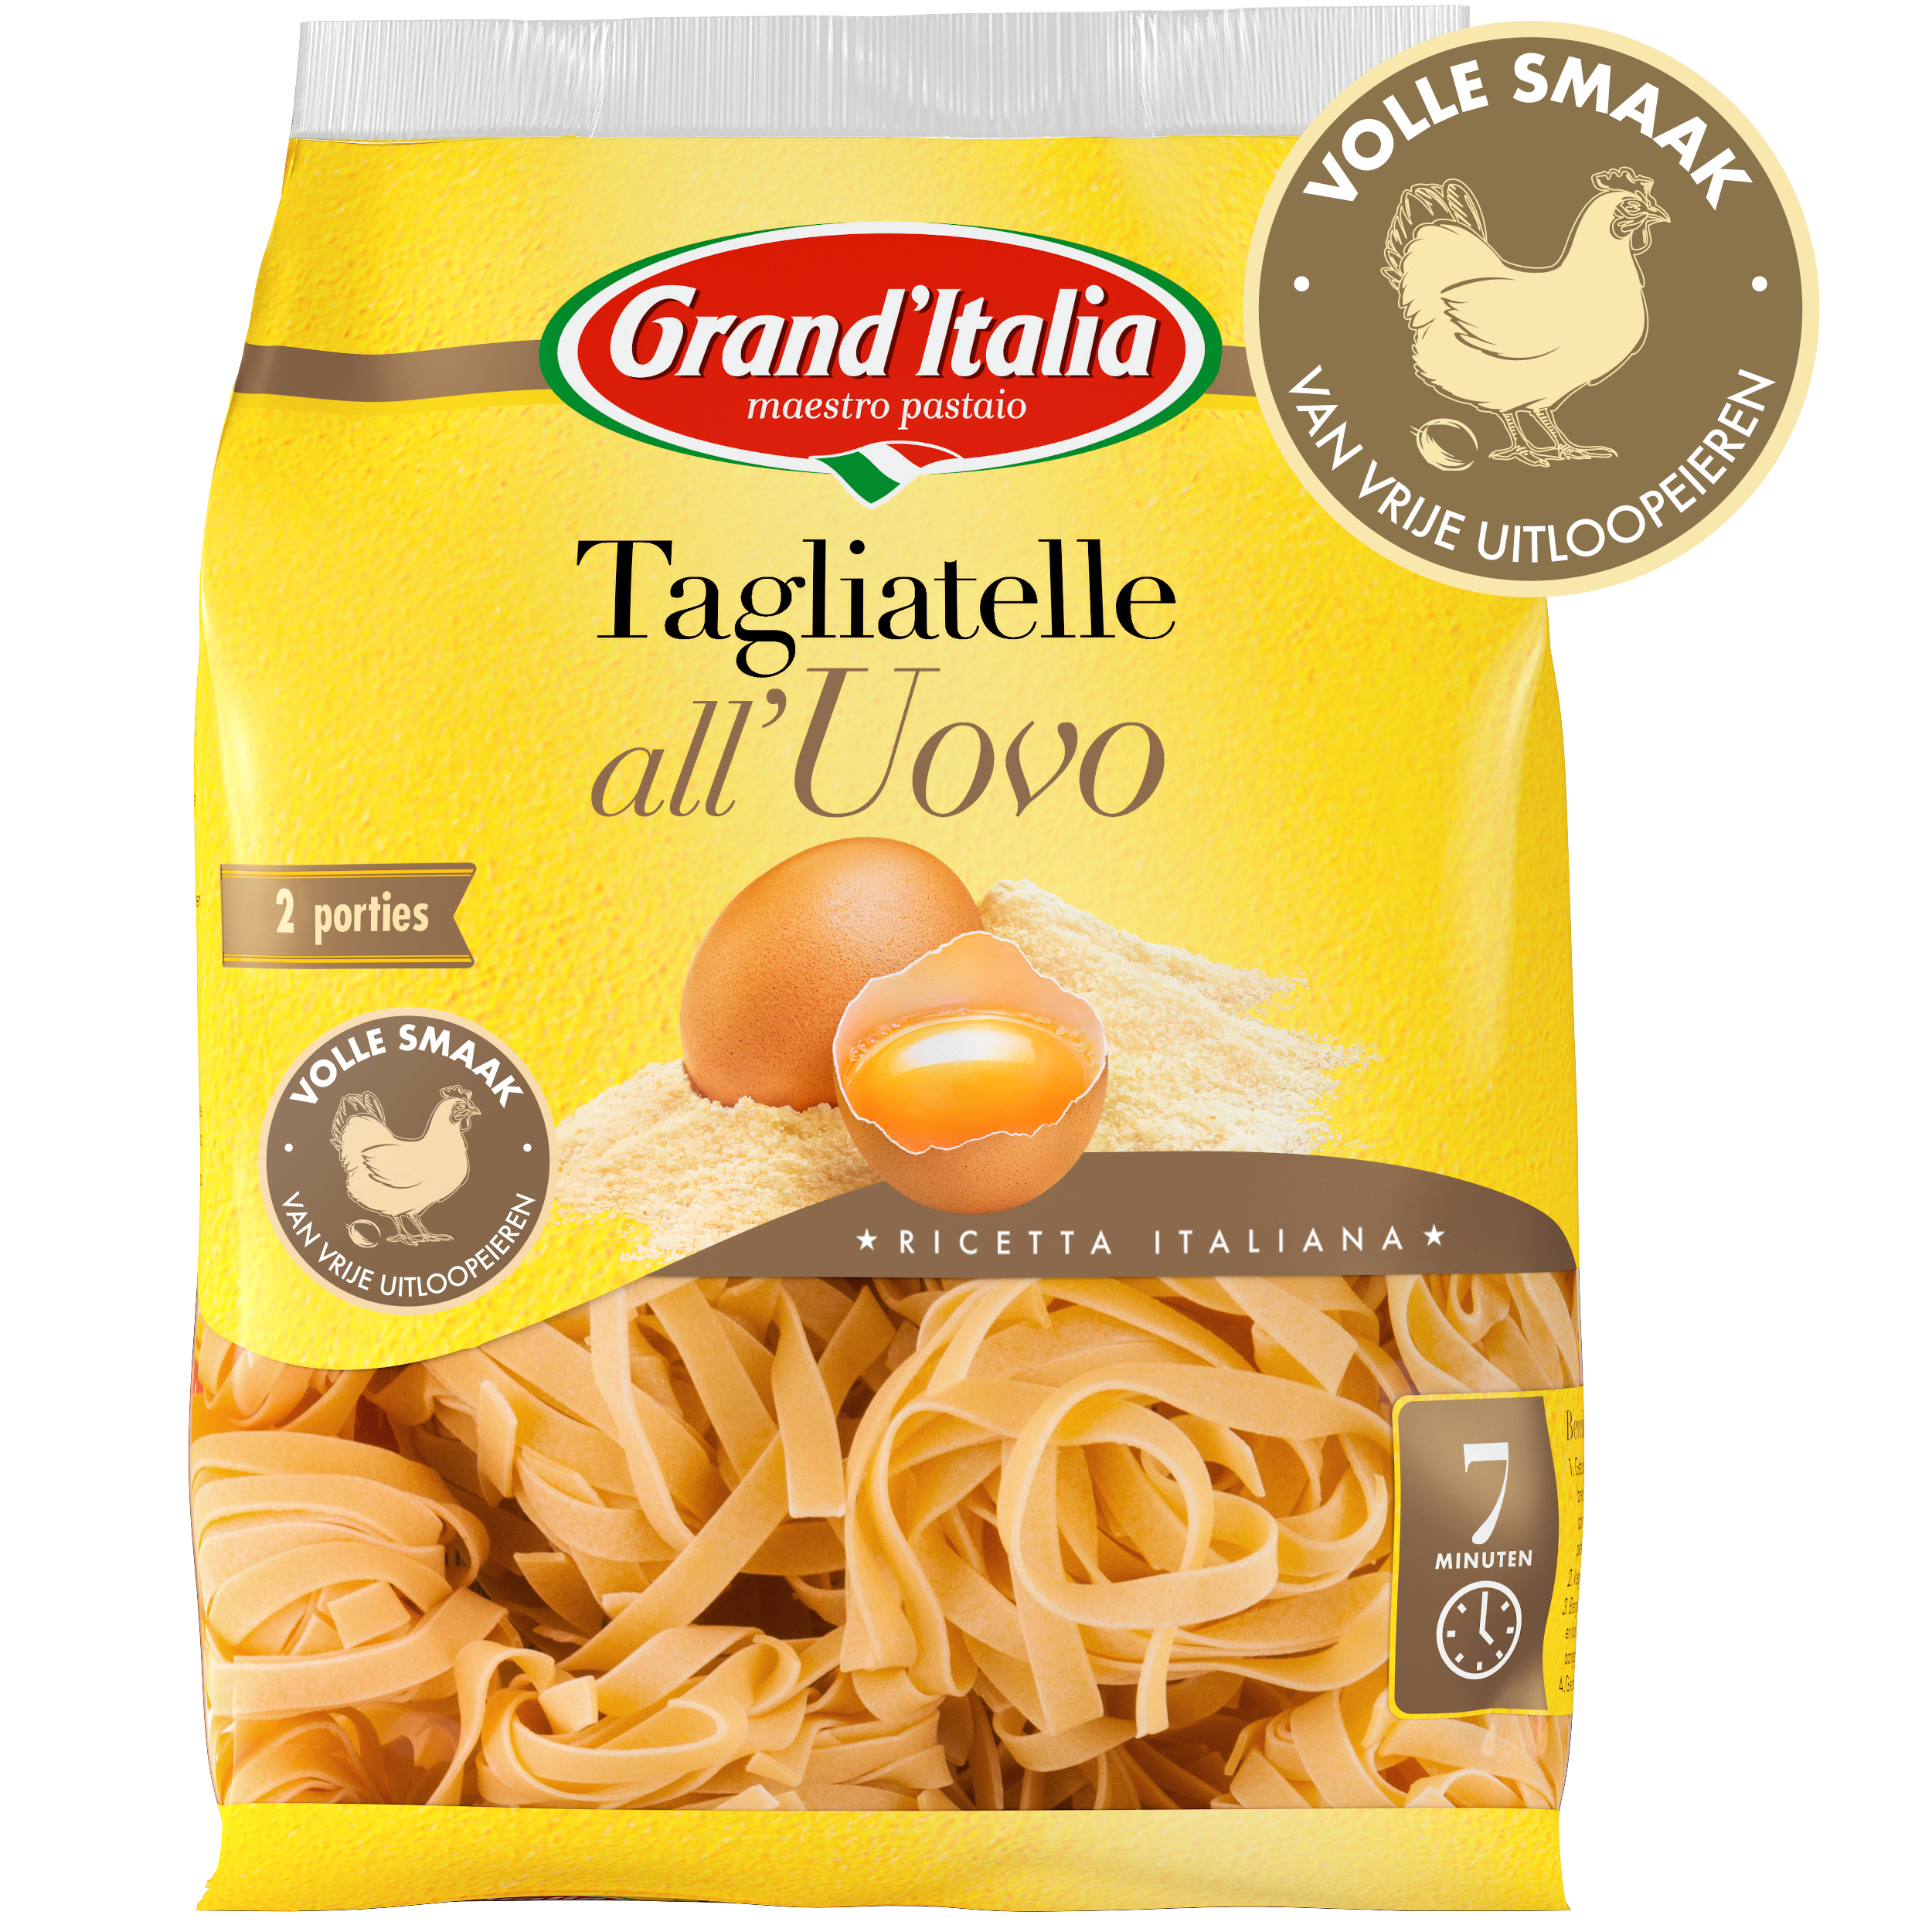 Pasta Tagliatelle all'Uovo 250g claim Grand'Italia